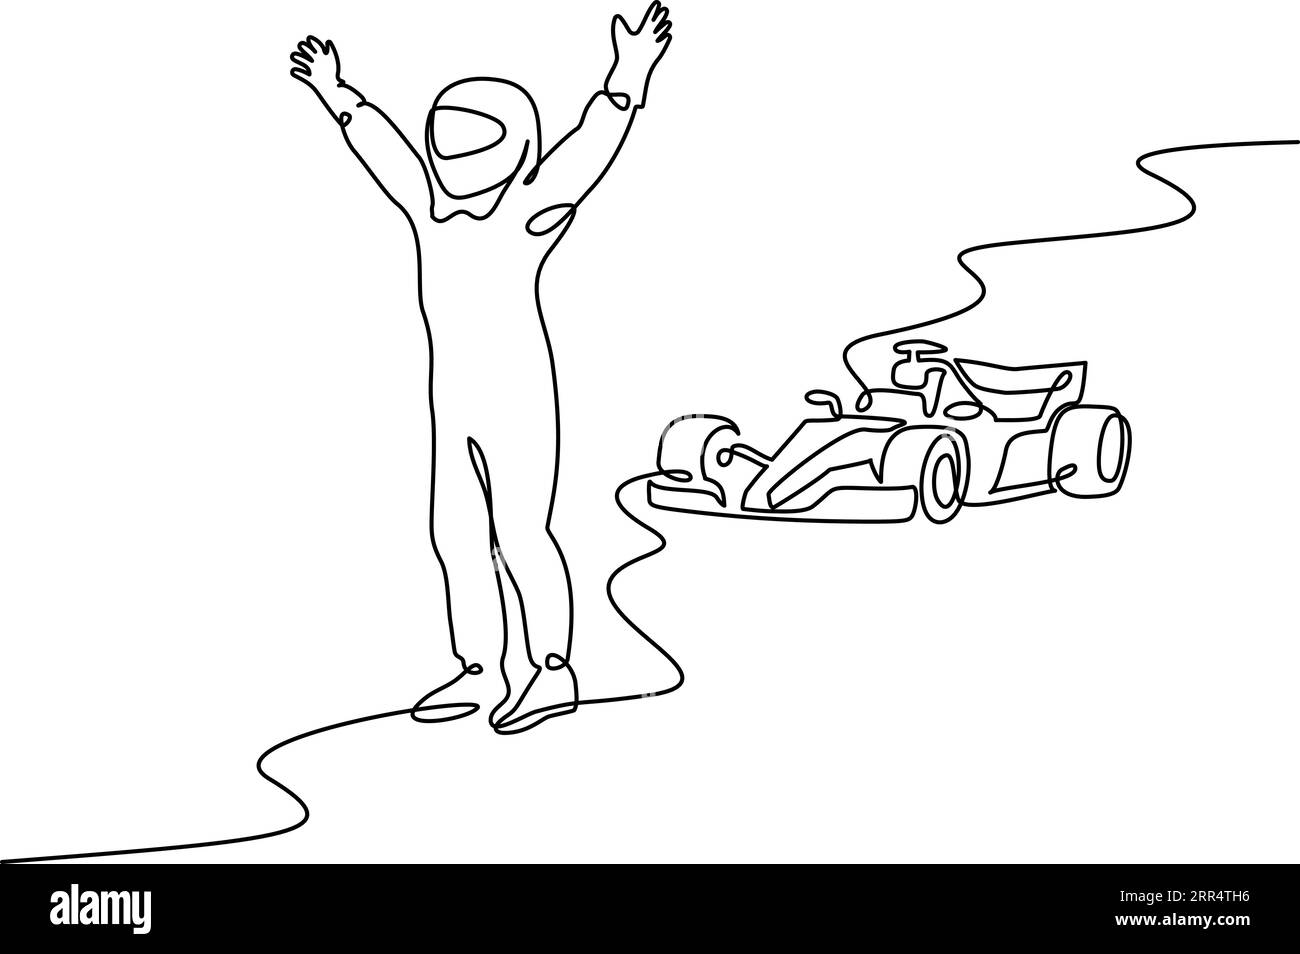 Formula Racing Sport Car e Racer vincono il Campionato. Stile di disegno continuo a una linea. Schizzo lineare nero minimalista isolato sul retro bianco Illustrazione Vettoriale